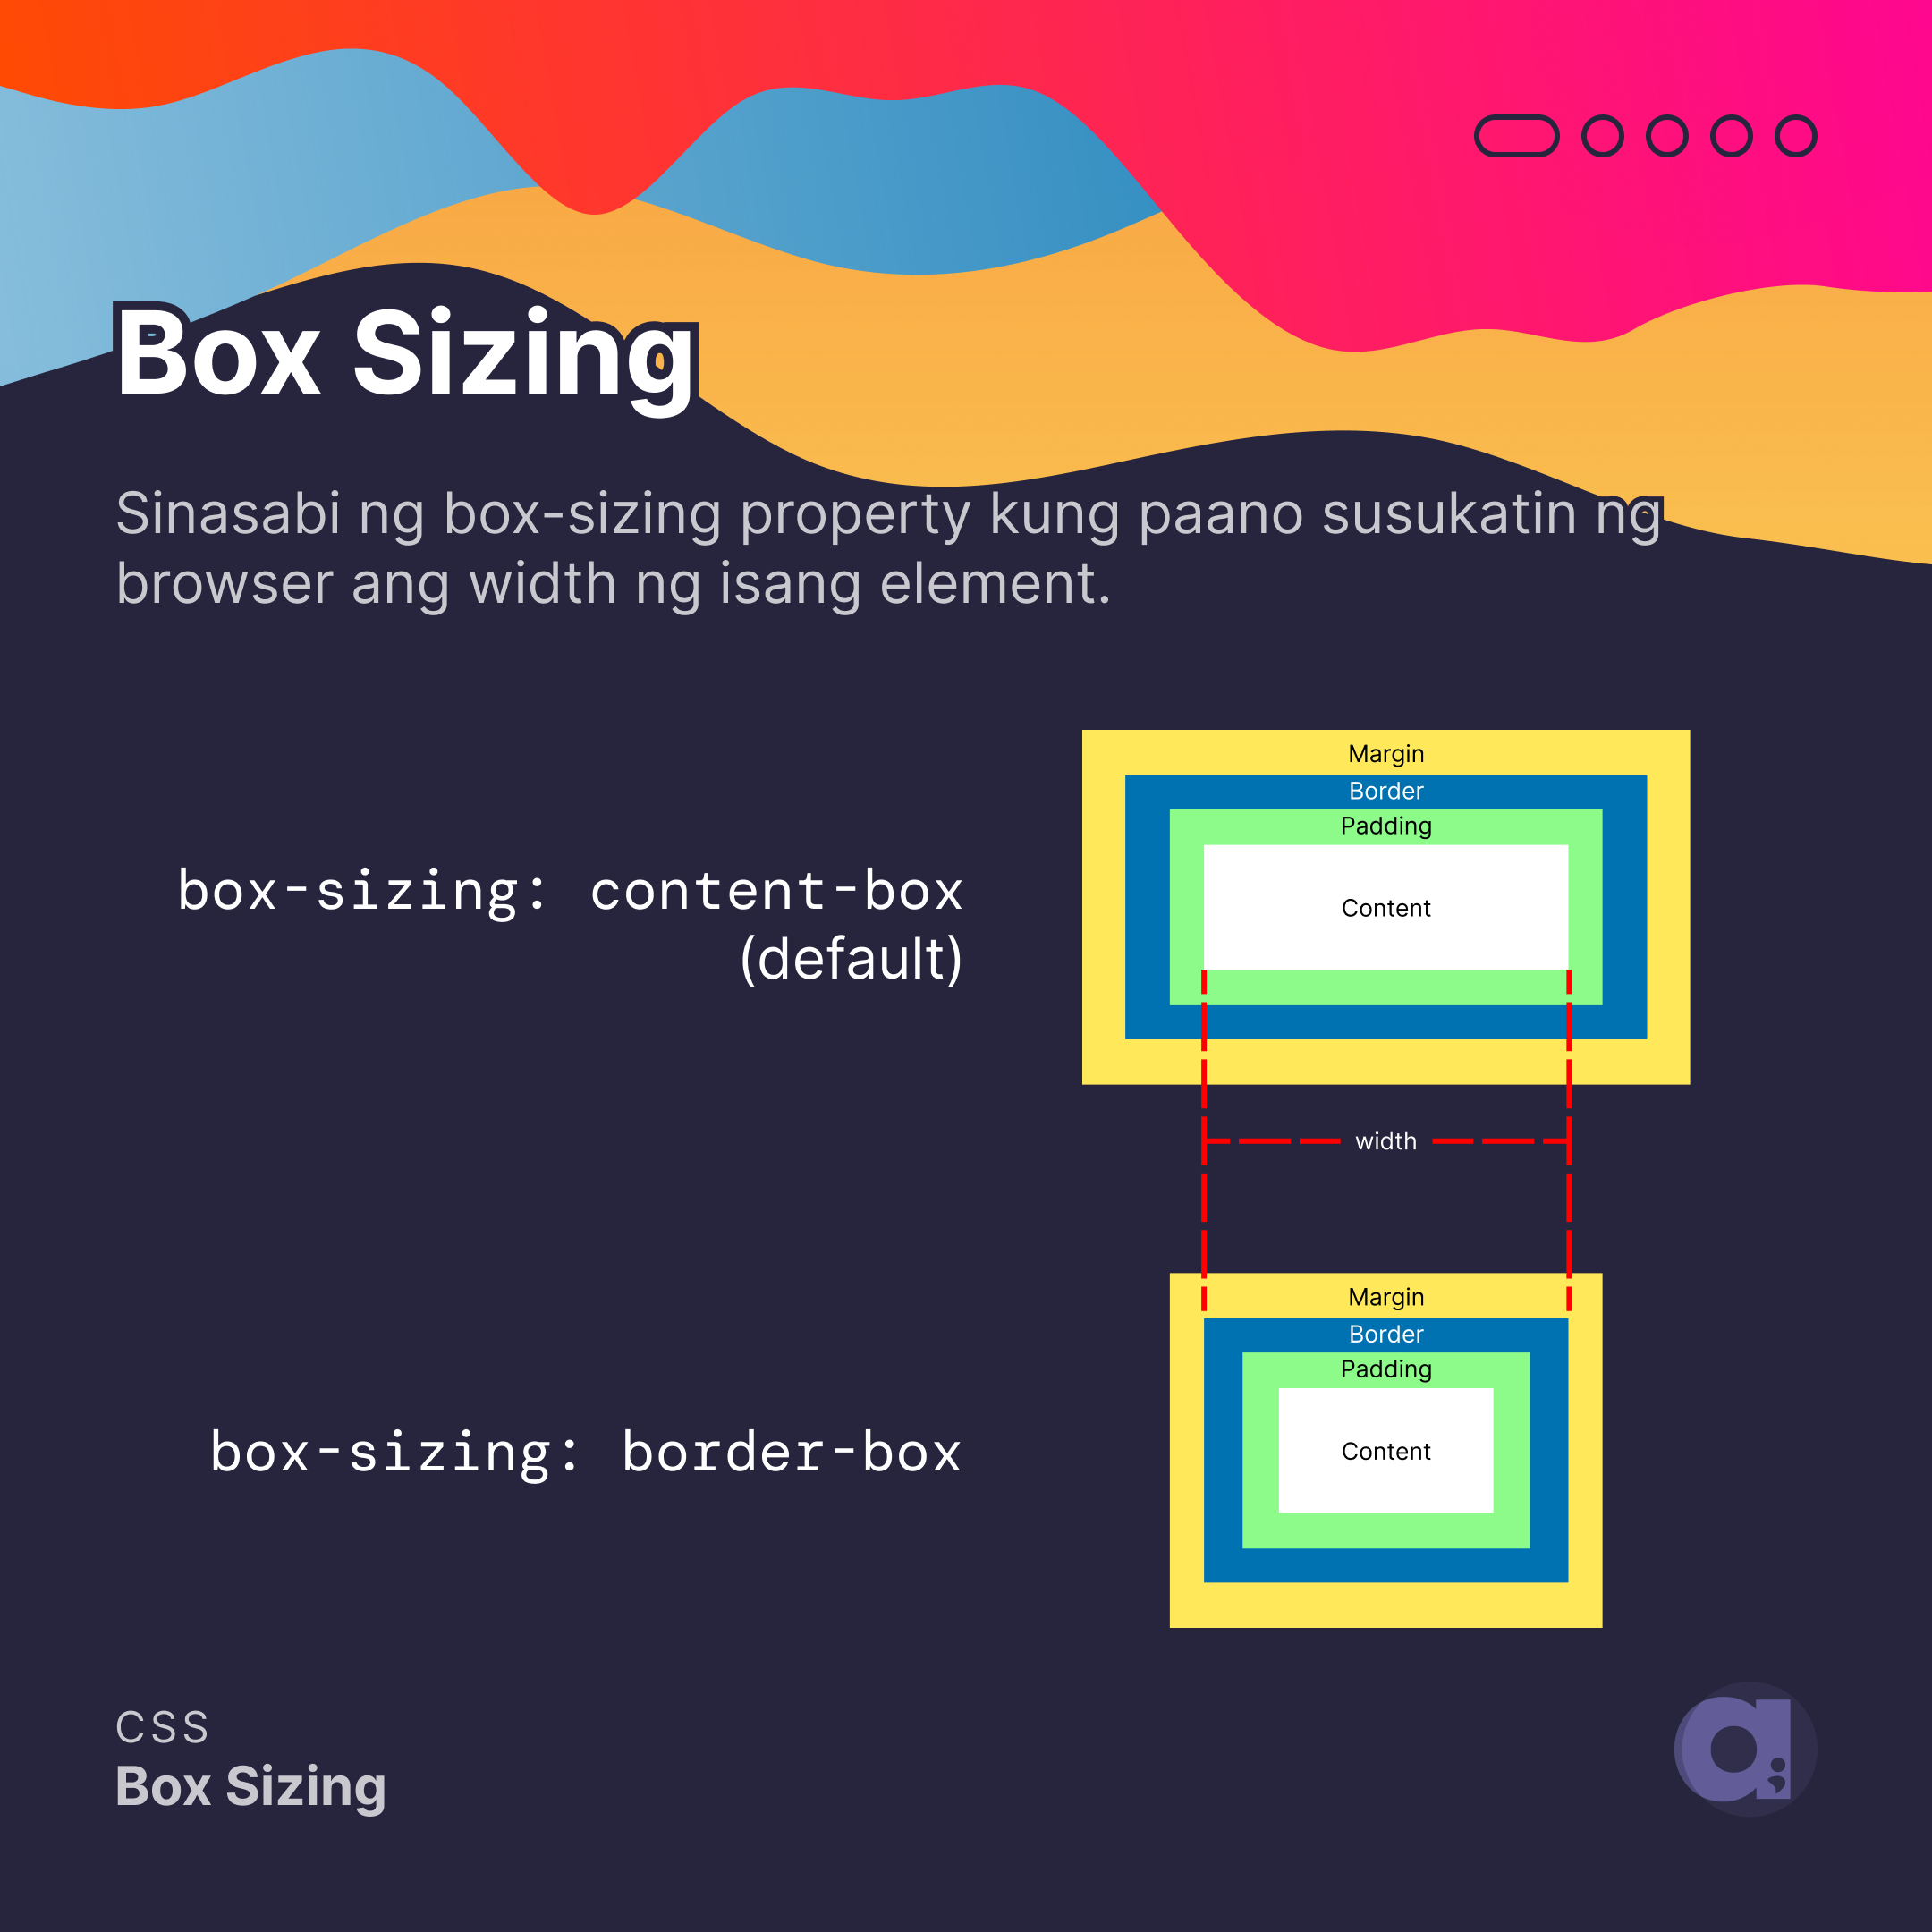 Sinasabi ng box-sizing property kung paano susukatin ng browser ang width ng isang element.